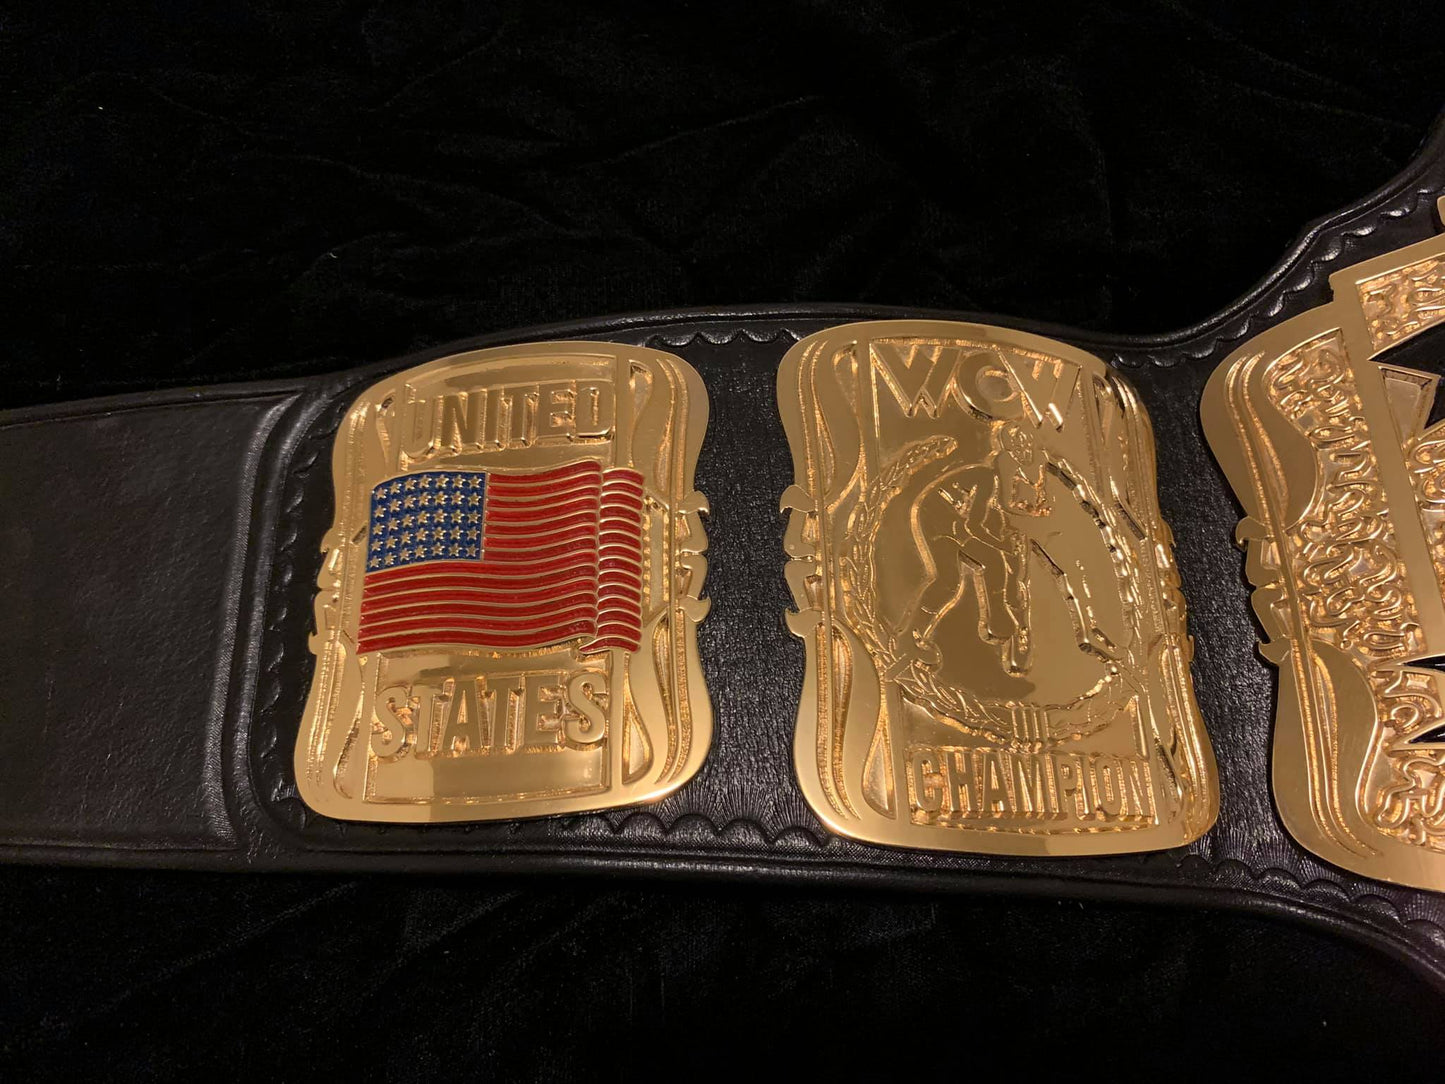 WWE Big gold belt – Moc Belts